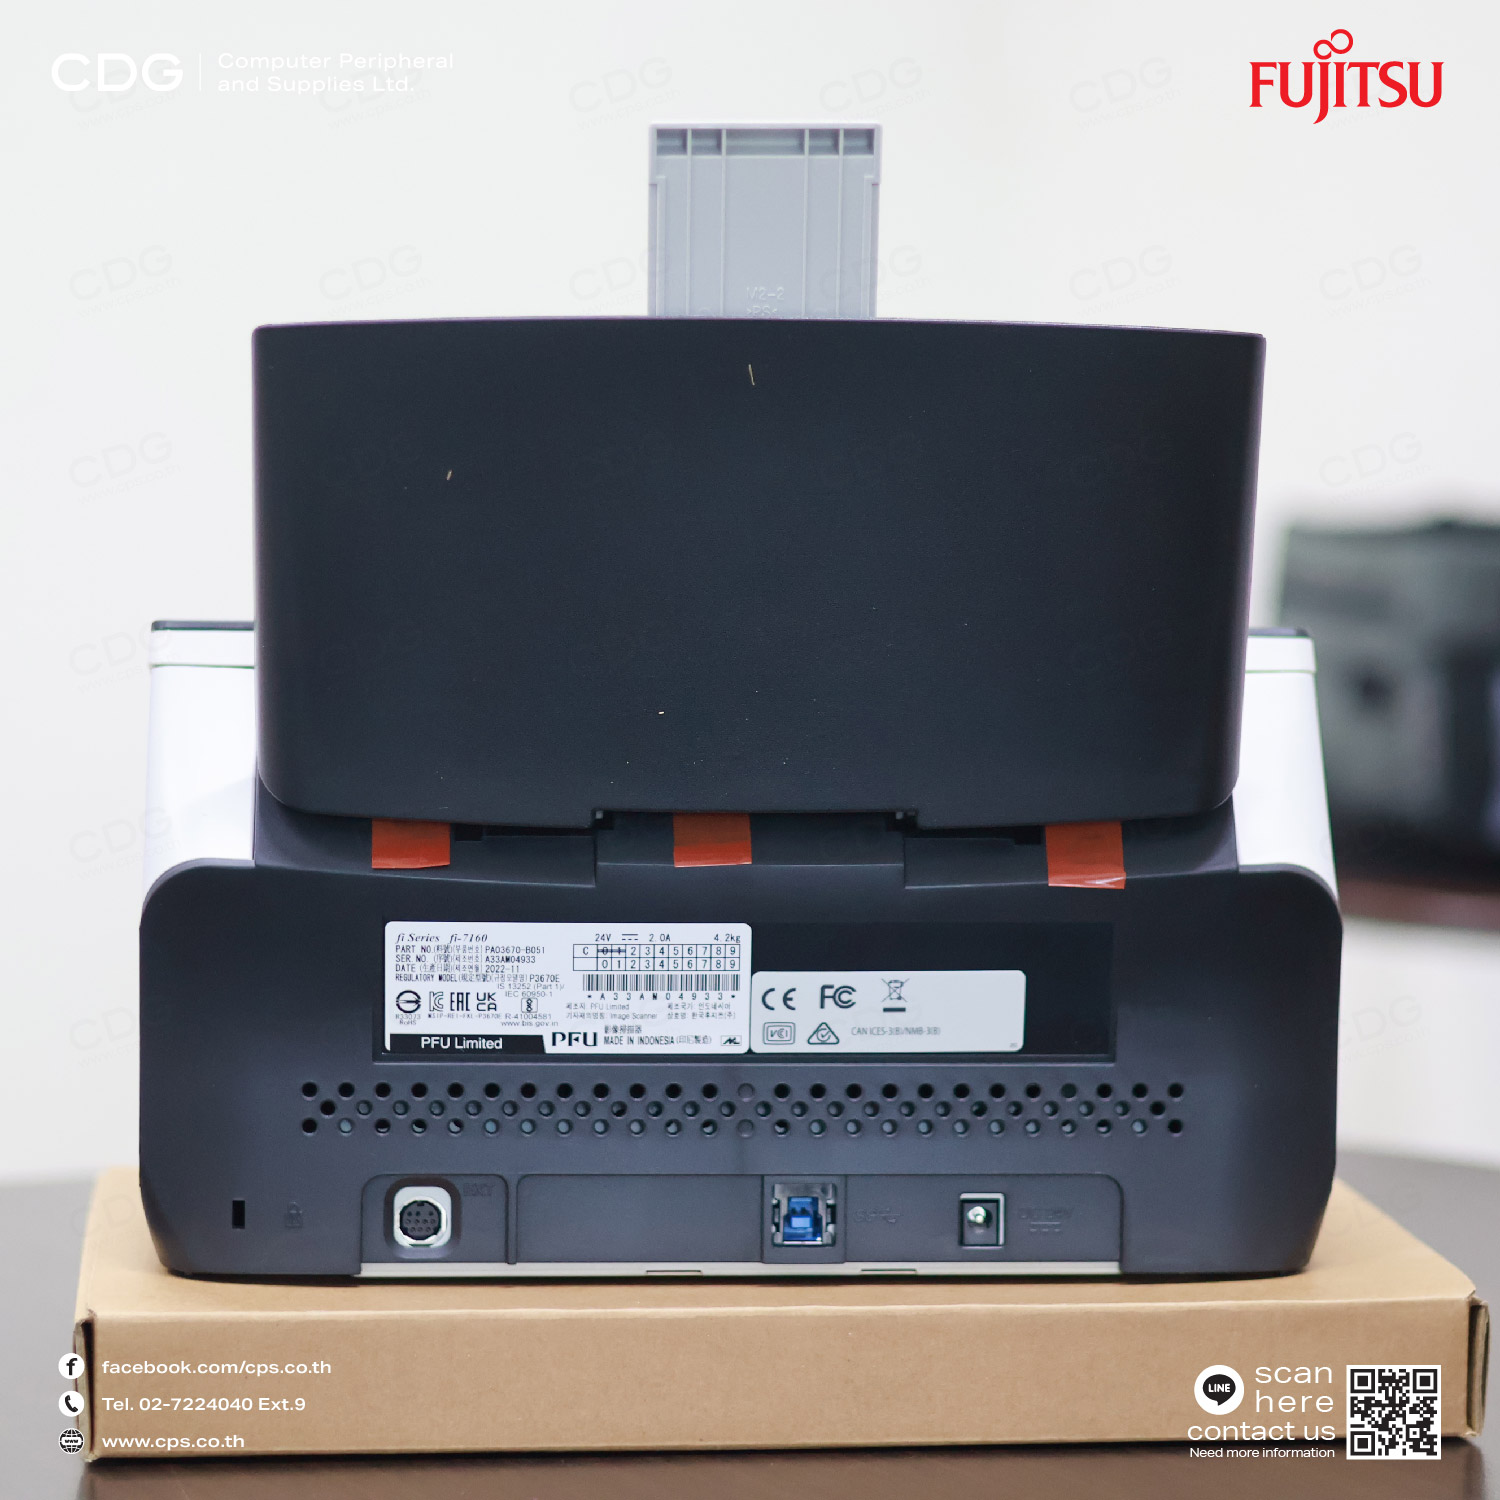 เครื่องสแกนเอกสาร Fujitsu Image Scanner Fi-7160